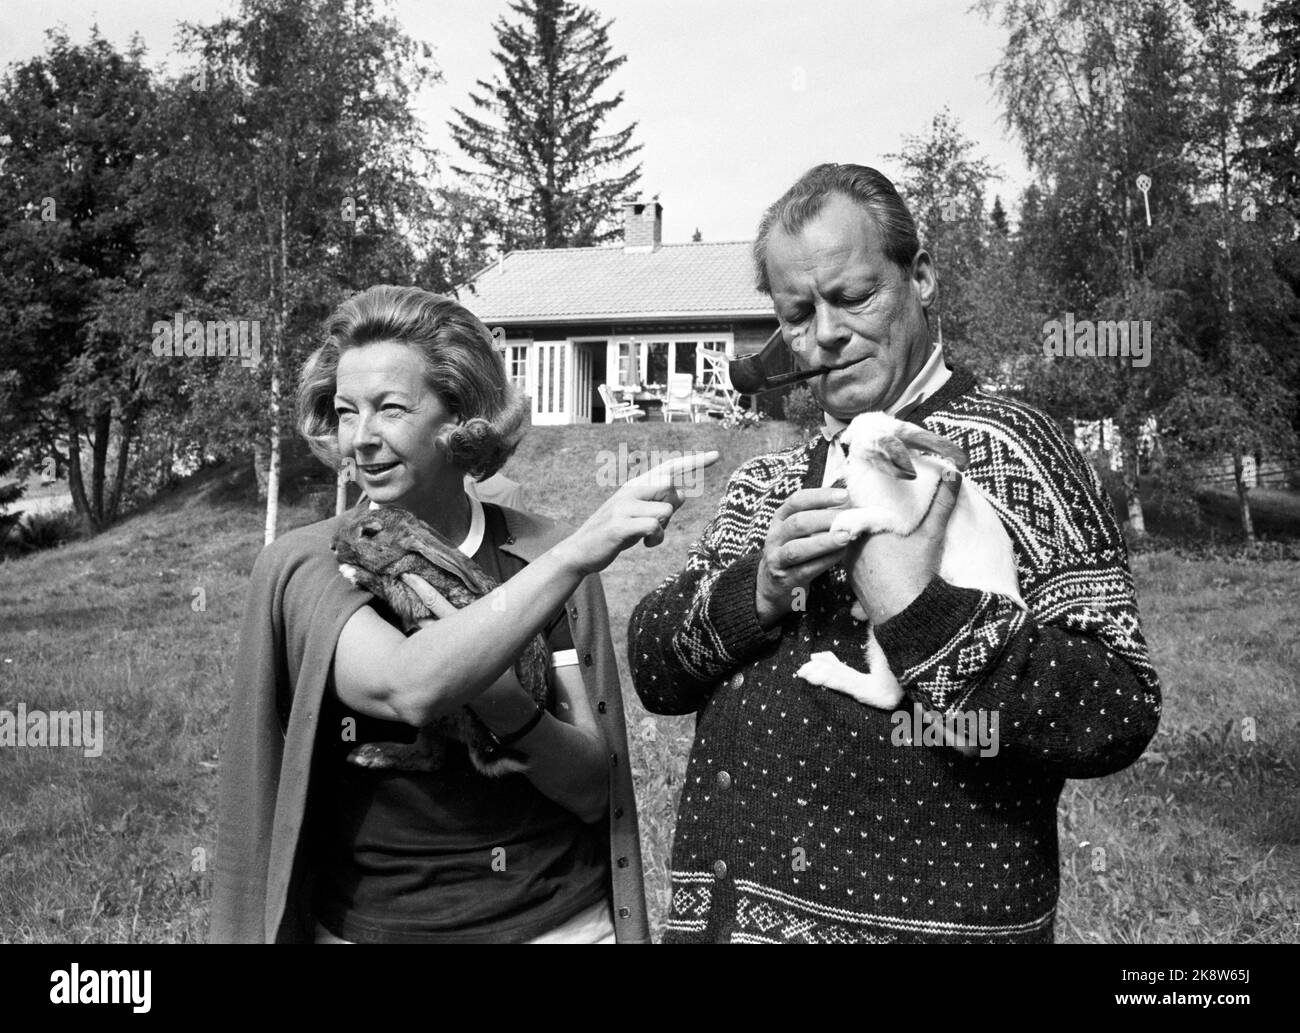 Hamar im Sommer 1970. Bundeskanzler Willy Brandt und Rut Brandt kauften 1965 in Vangsåsen eine Hütte in Hamar und verbringen hier ihre Sommerferien mit der Familie. Sie haben auch einige Kaninchen im Ruhestand, die nach dem Sommer zurückgebracht wird. Jemanden zu fotografieren, den Sie in den Augen gesehen haben, ist völlig veraltet. Foto: Ivar Aaserud / Aktuell / NTB Stockfoto